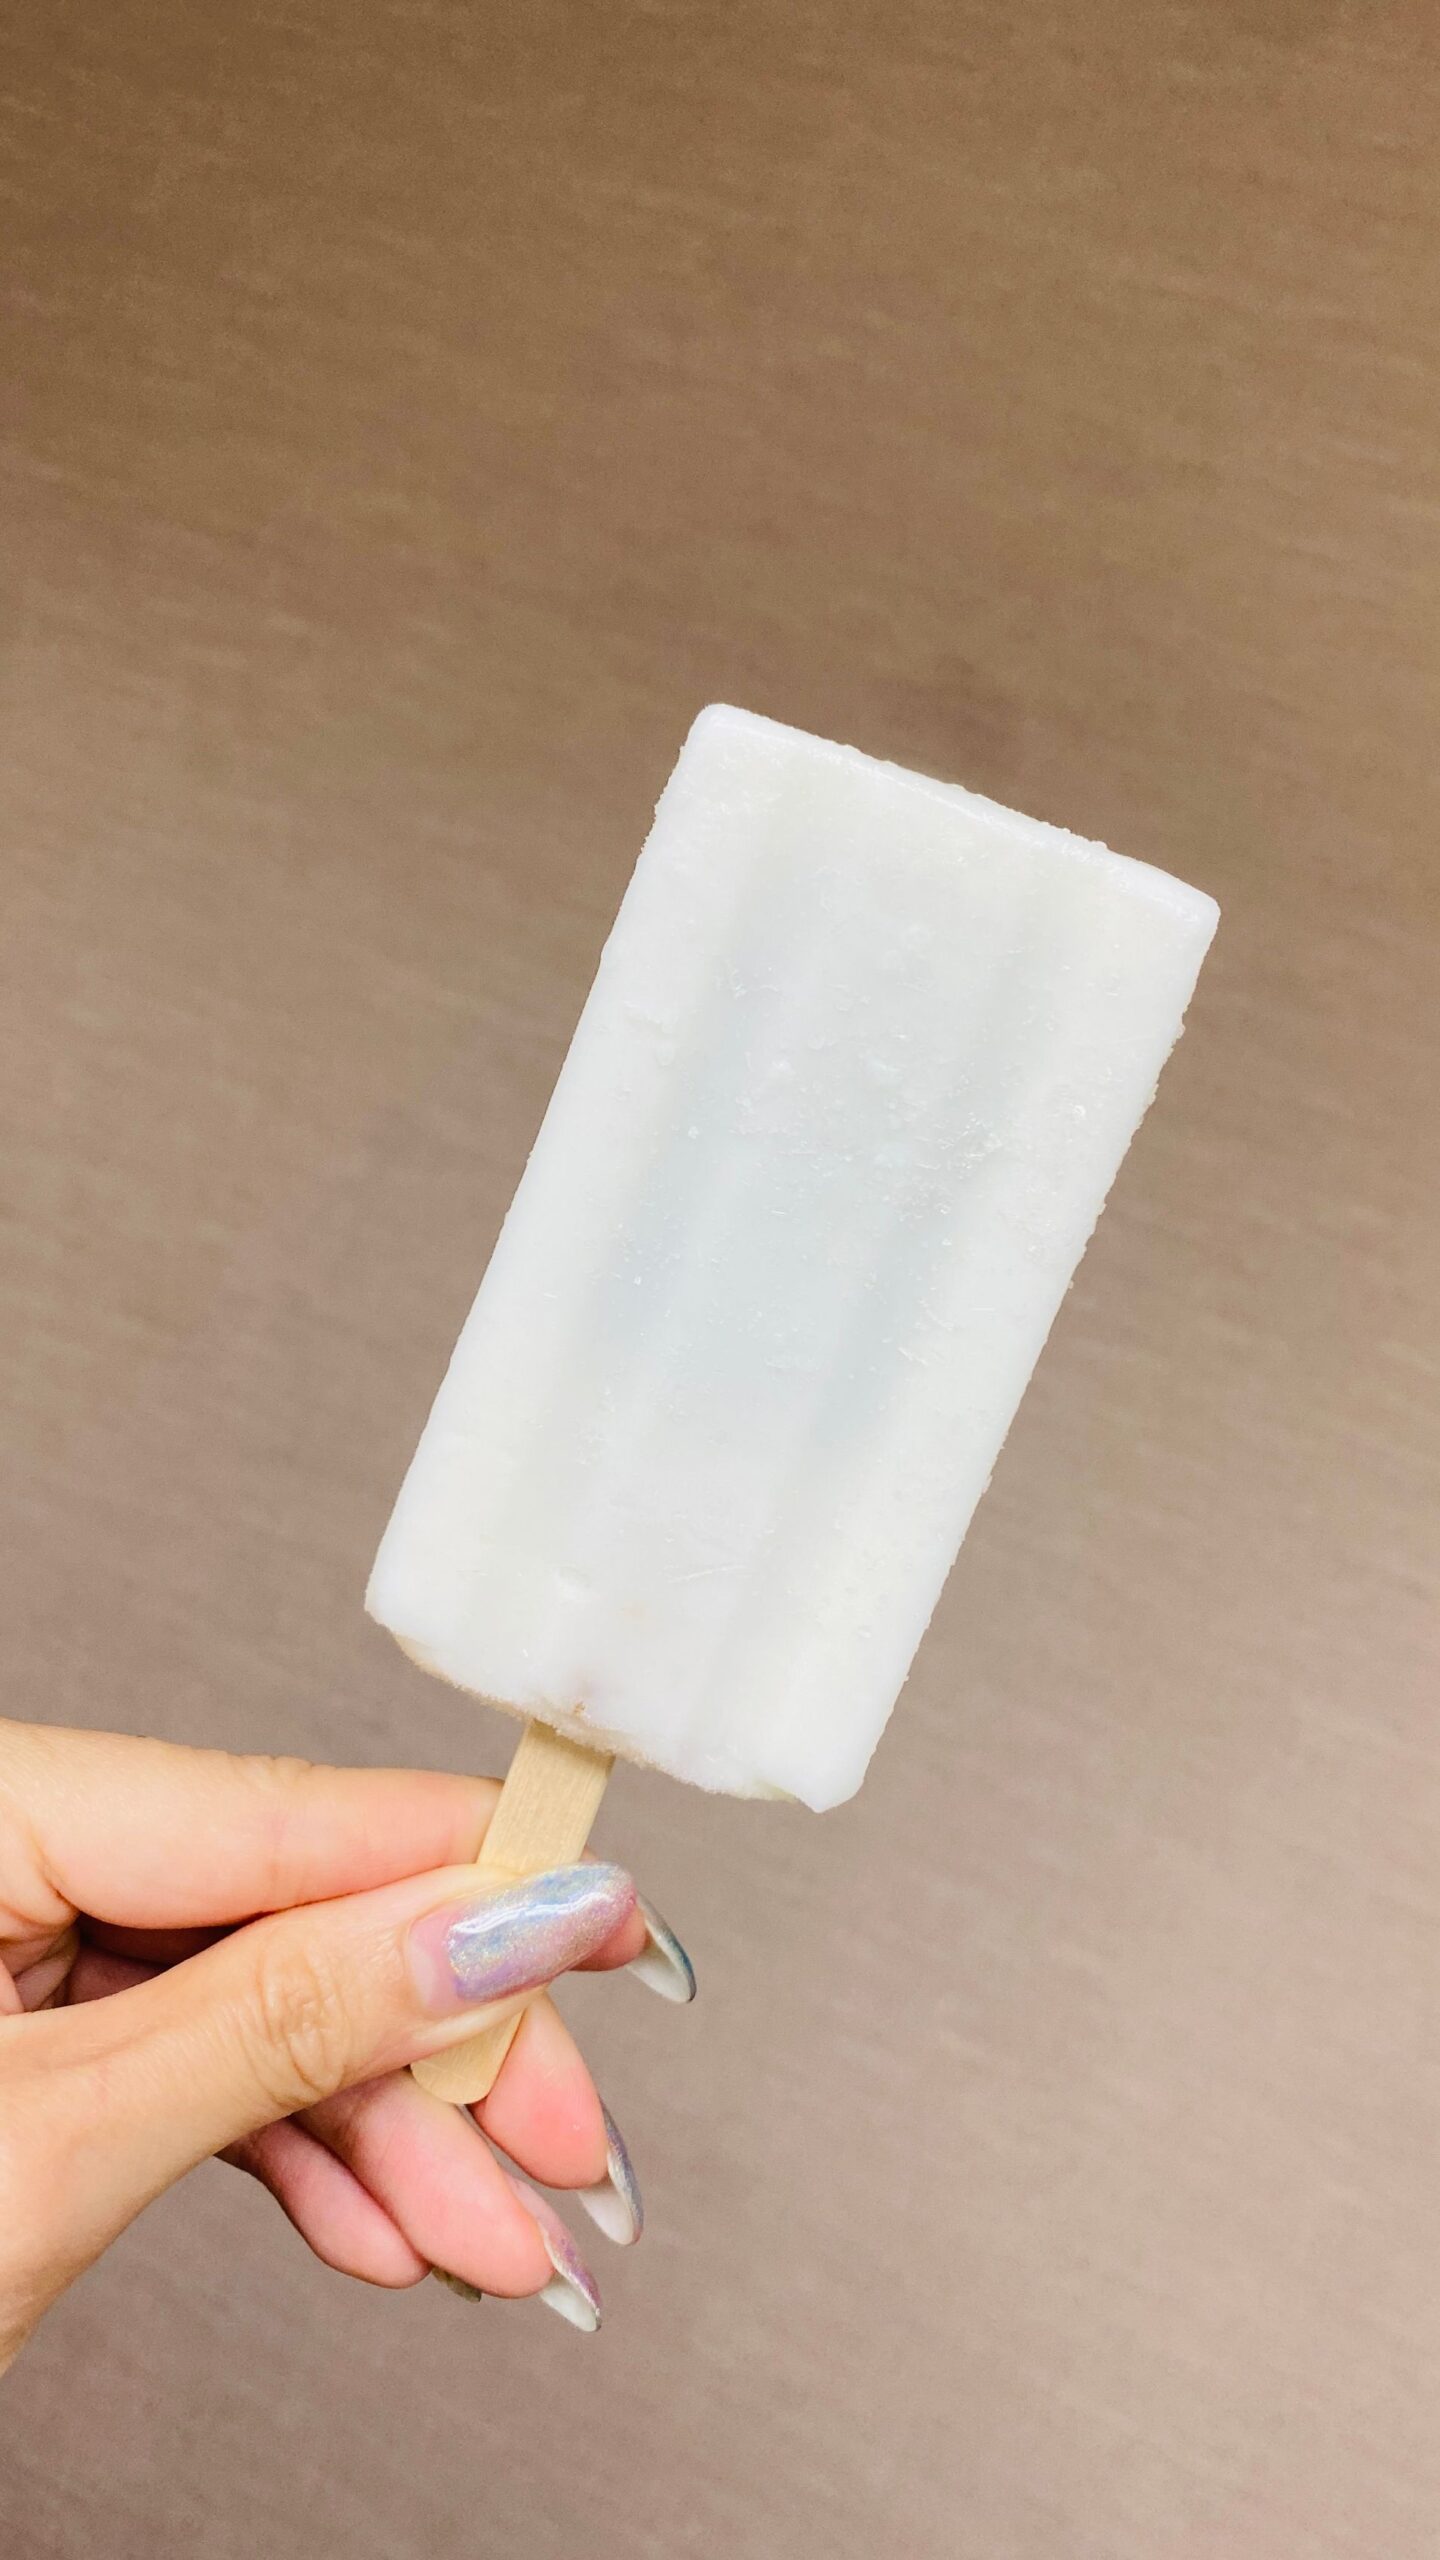 아이들이 좋아하는 오키나와 특산 아이스크림 맛과 특징 비교!3